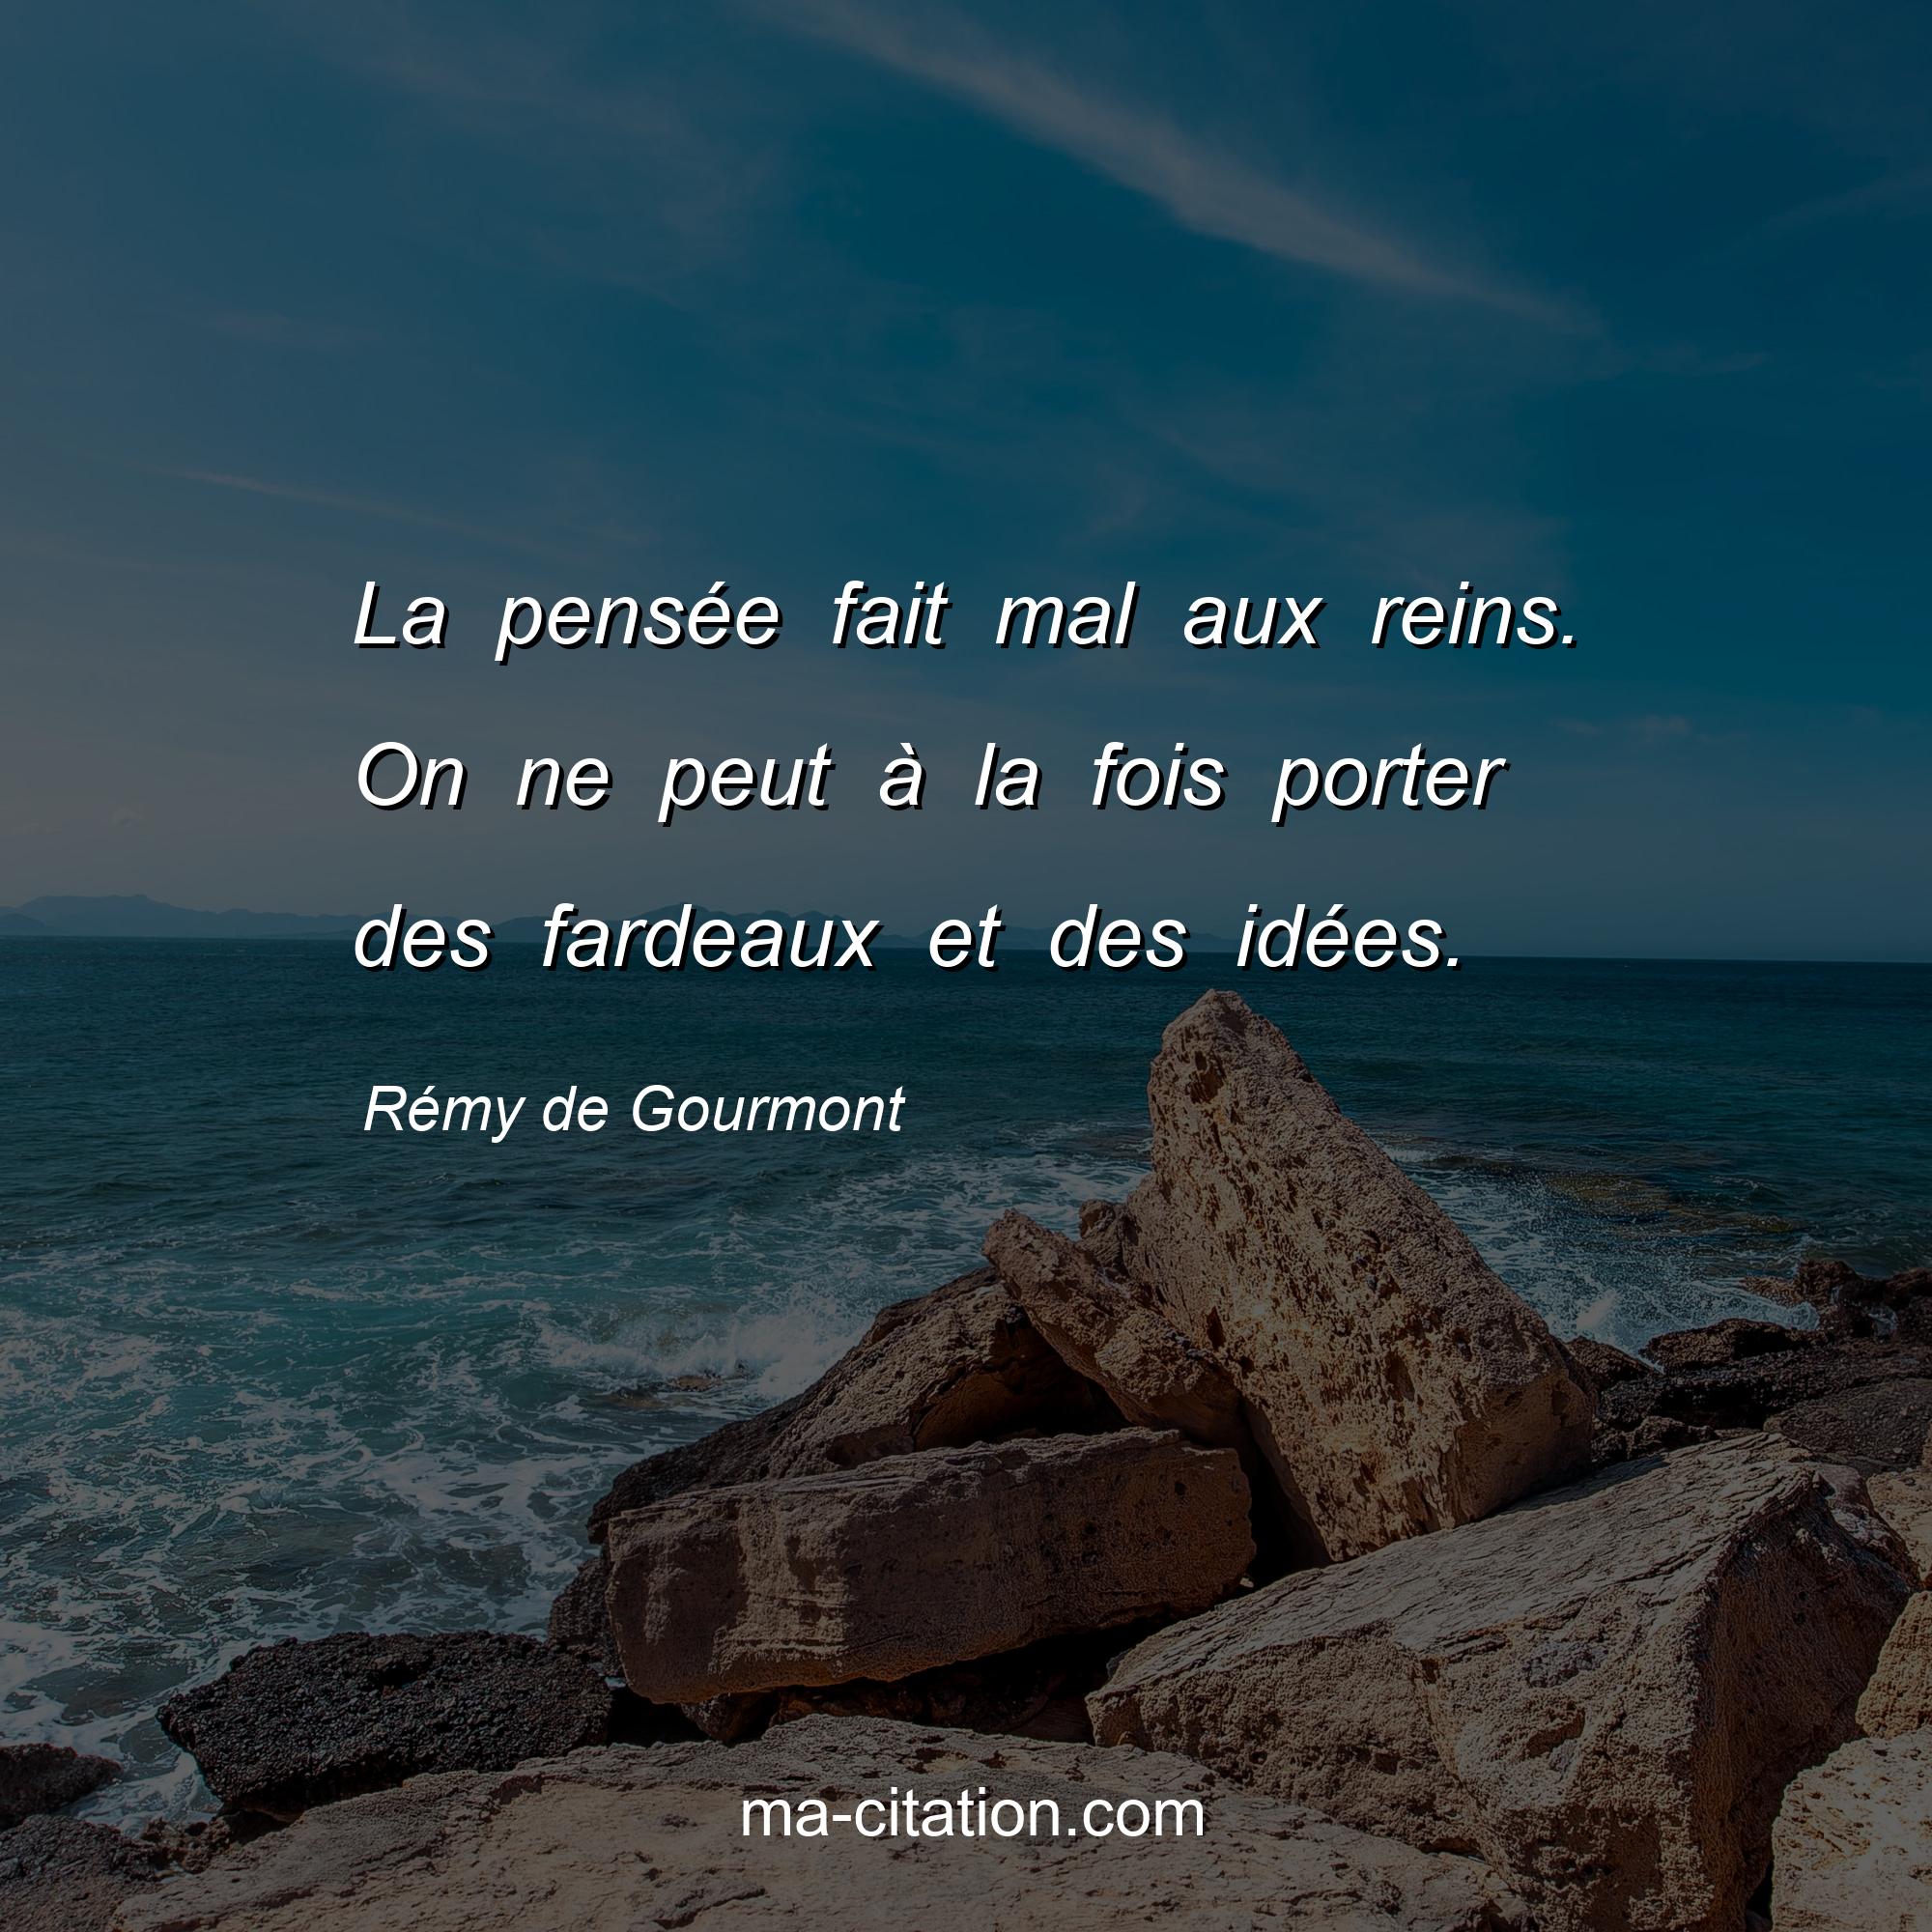 Rémy de Gourmont : La pensée fait mal aux reins. On ne peut à la fois porter des fardeaux et des idées.